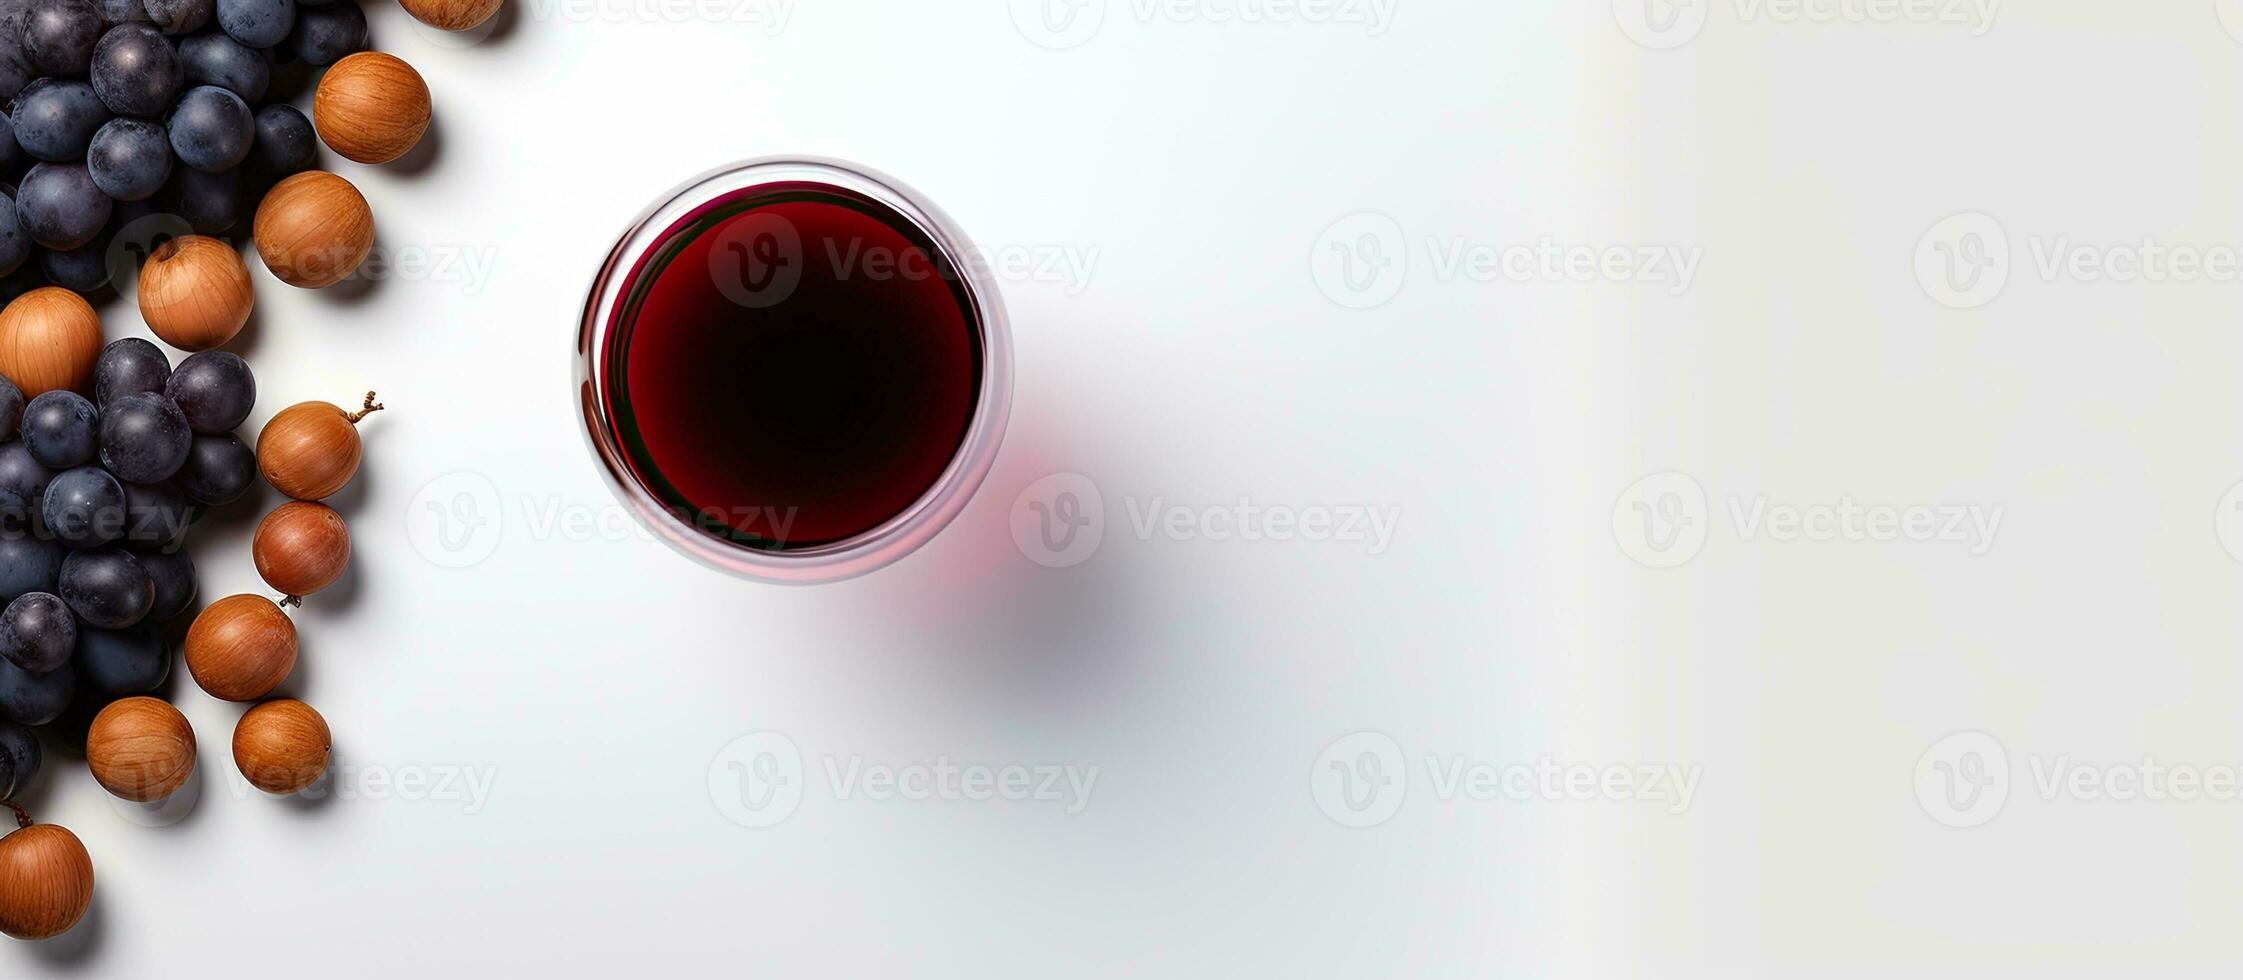 foto do uma vidro do vermelho vinho com uvas e nozes com cópia de espaço